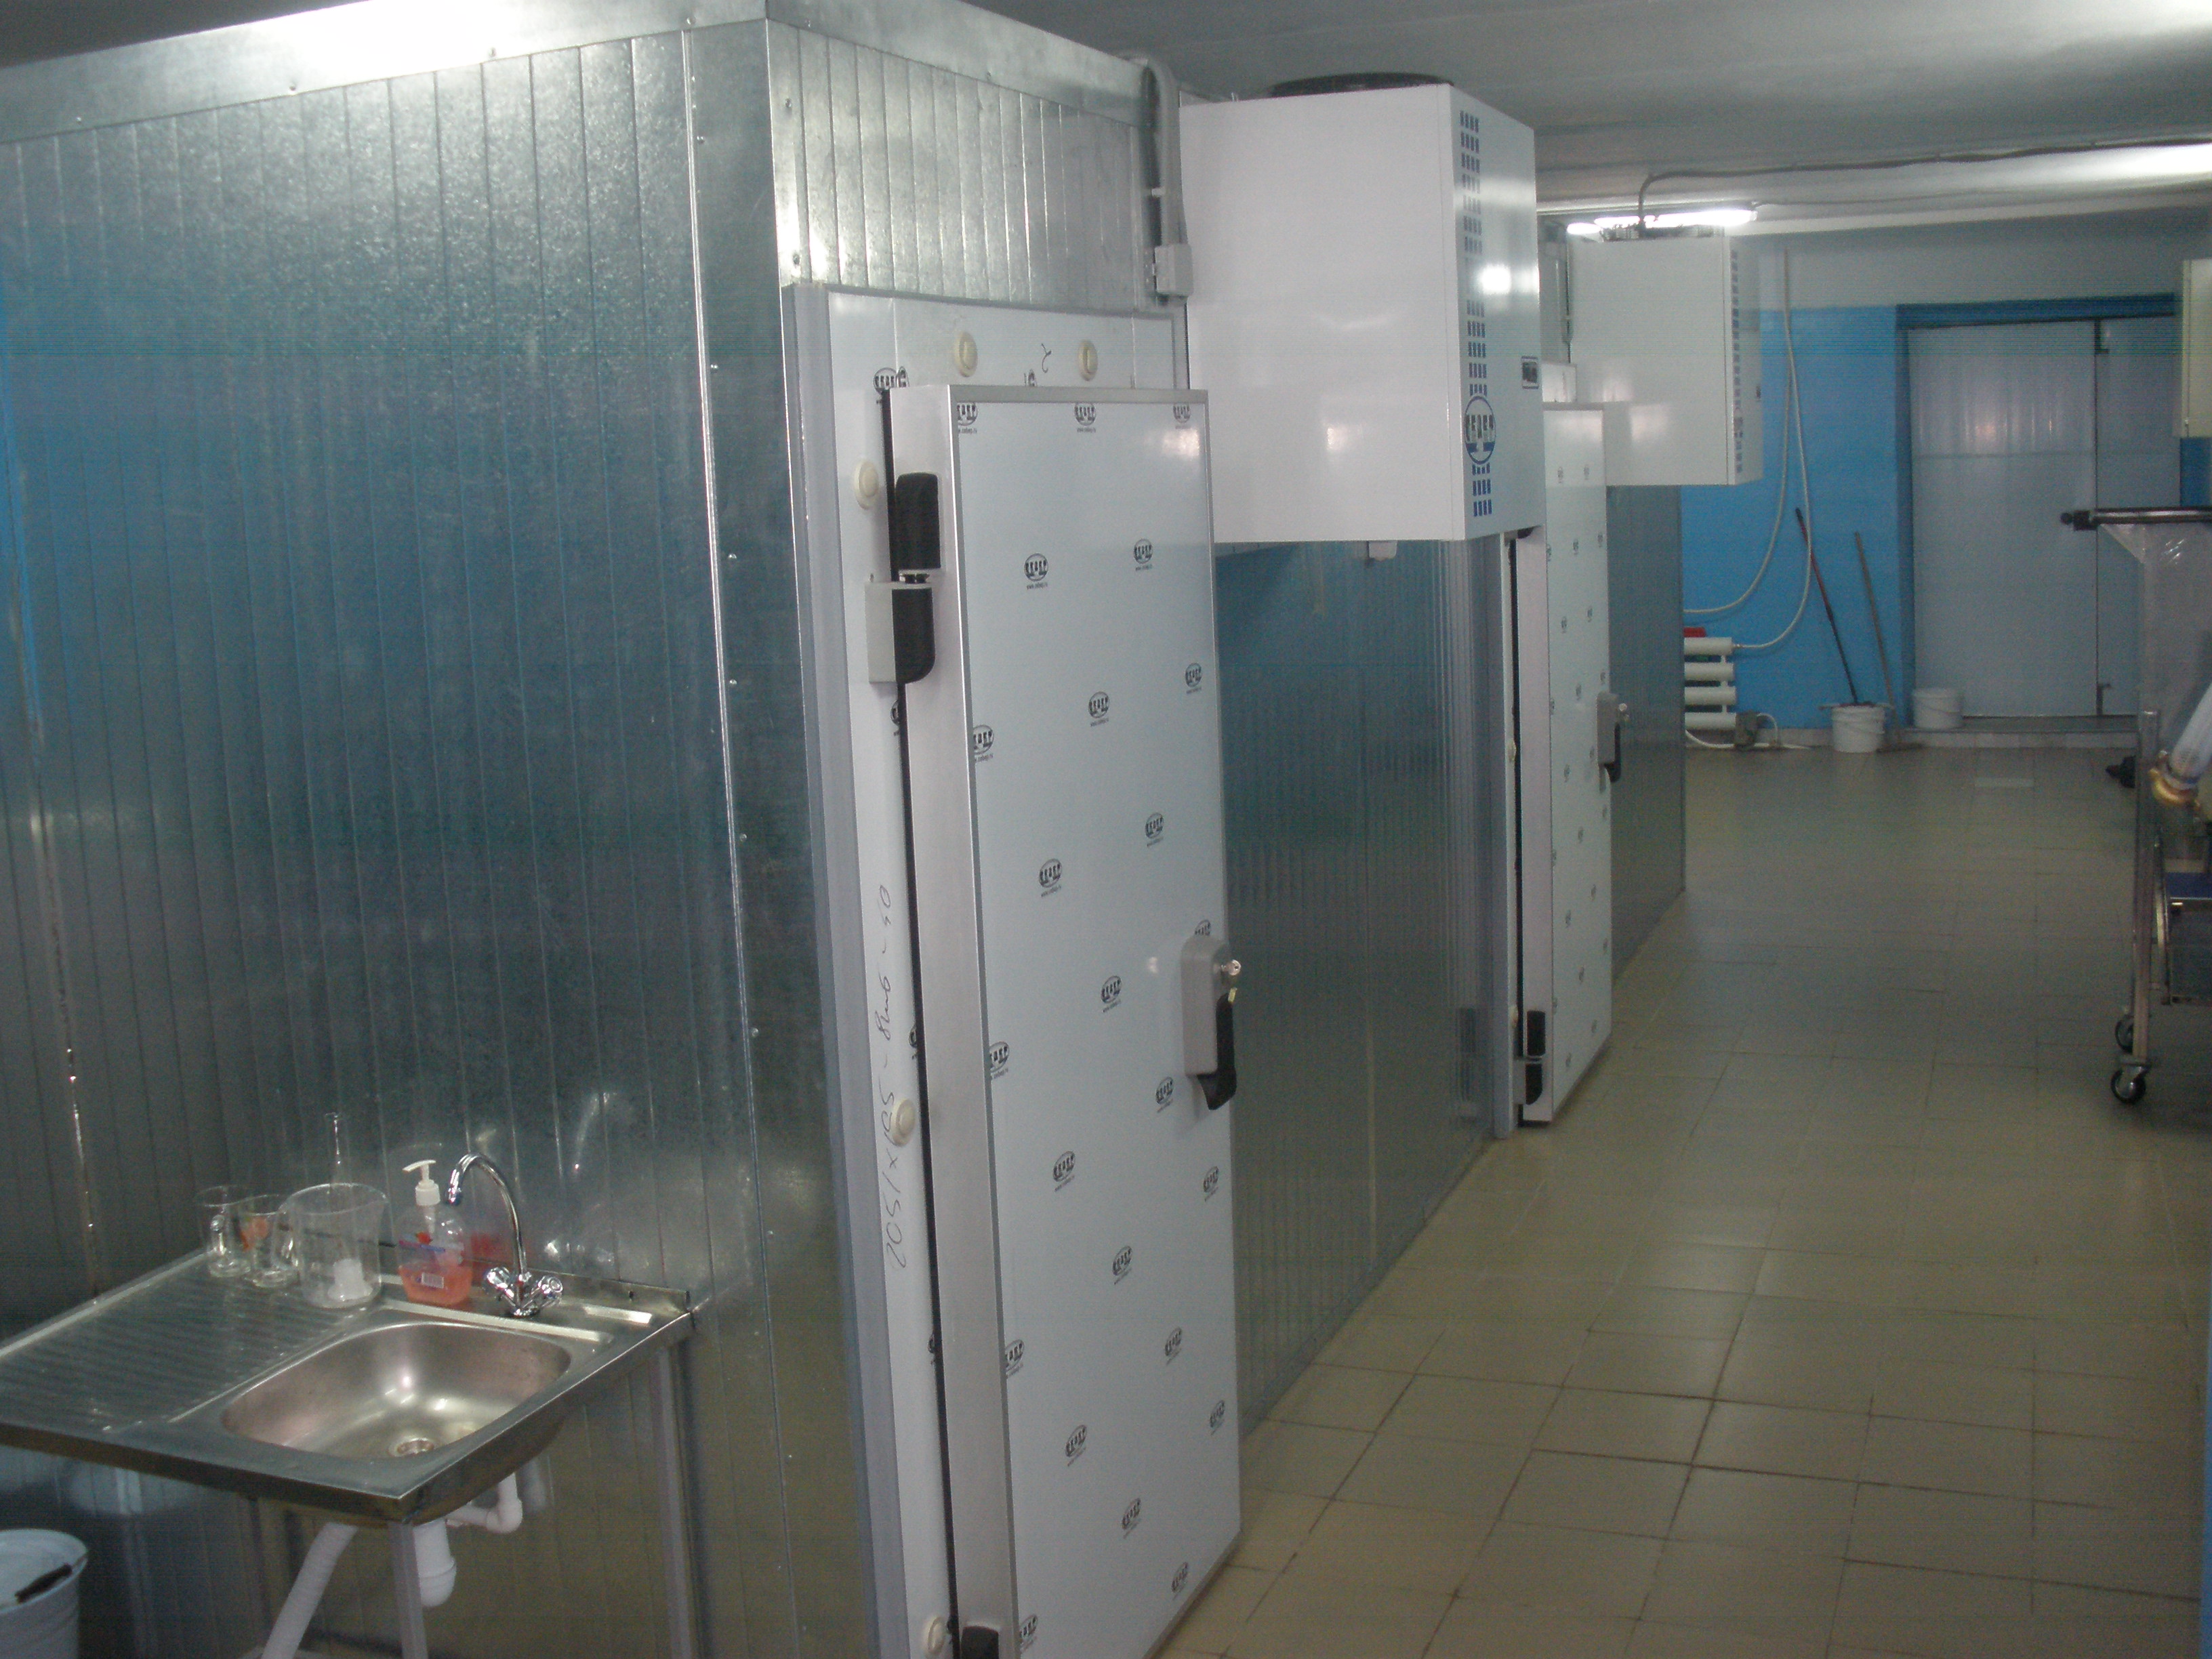 Двери Холодильный Распашные Накладные 900х2100 блок 1300х2380 Низкотемпературные